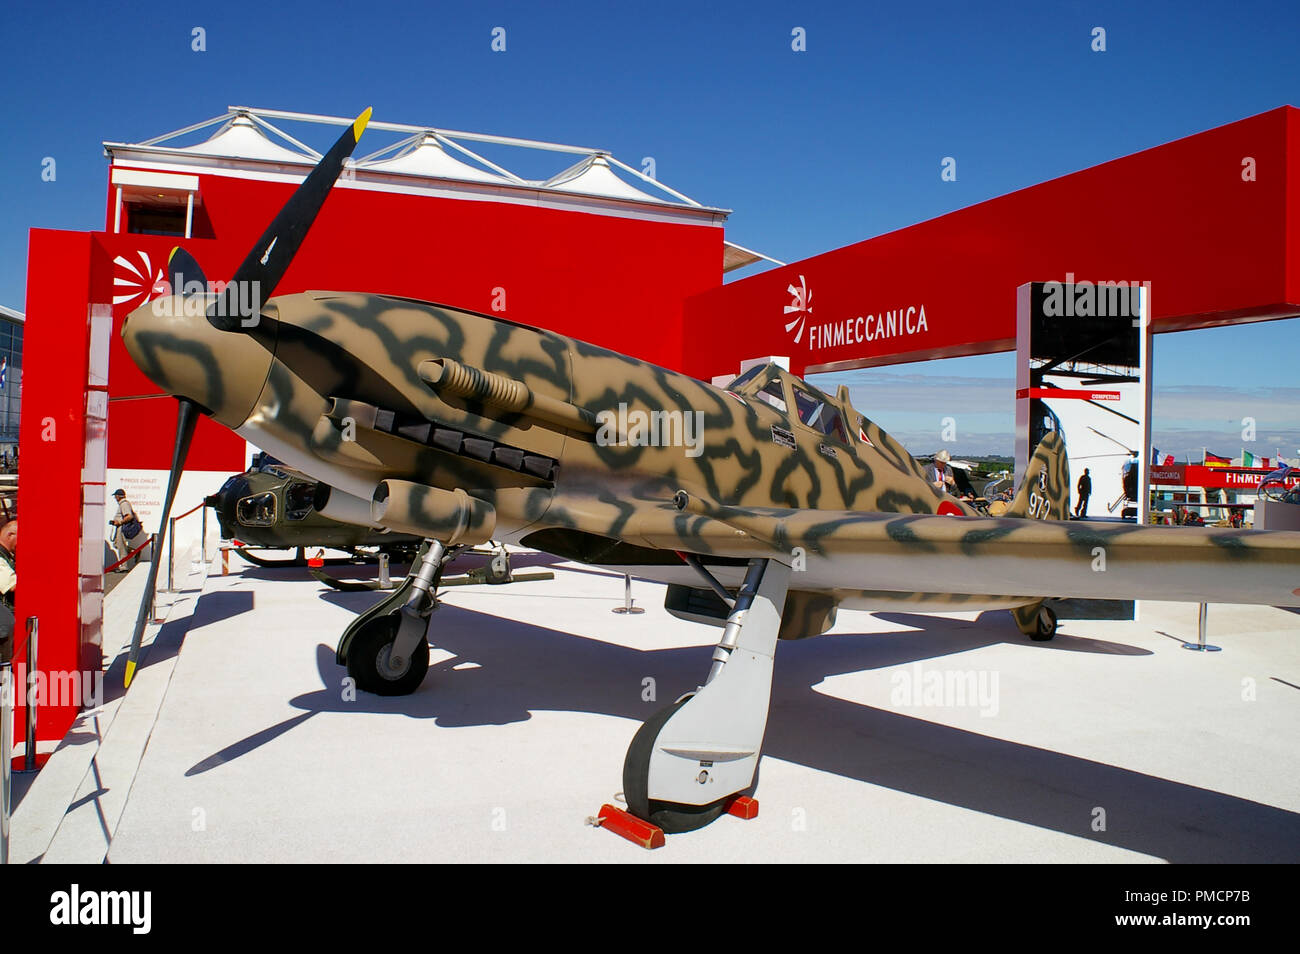 Stand Finmeccanica al salone Farnborough Airshow internazionale con Macchi C.205 Seconda Guerra Mondiale italiano da combattimento aereo relative alla storia della ditta Foto Stock